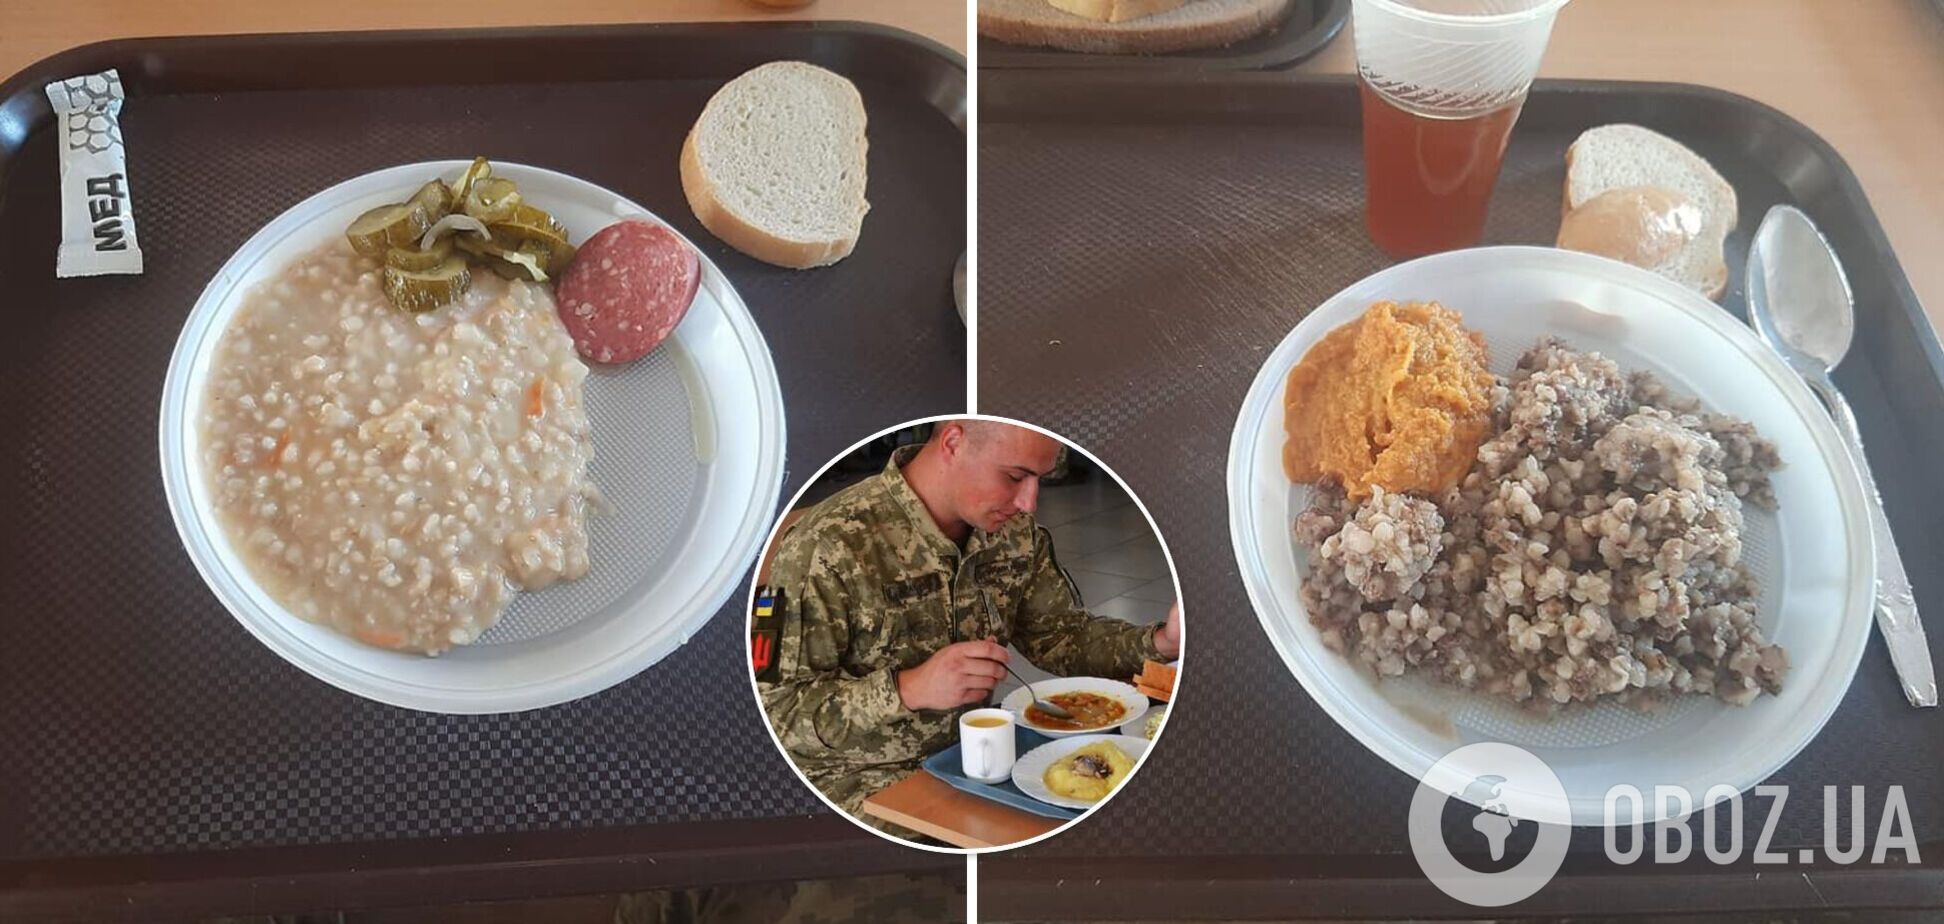 В сети разгорелся скандал из-за питания украинских военных: появились фото 'вкусностей' и опровержение